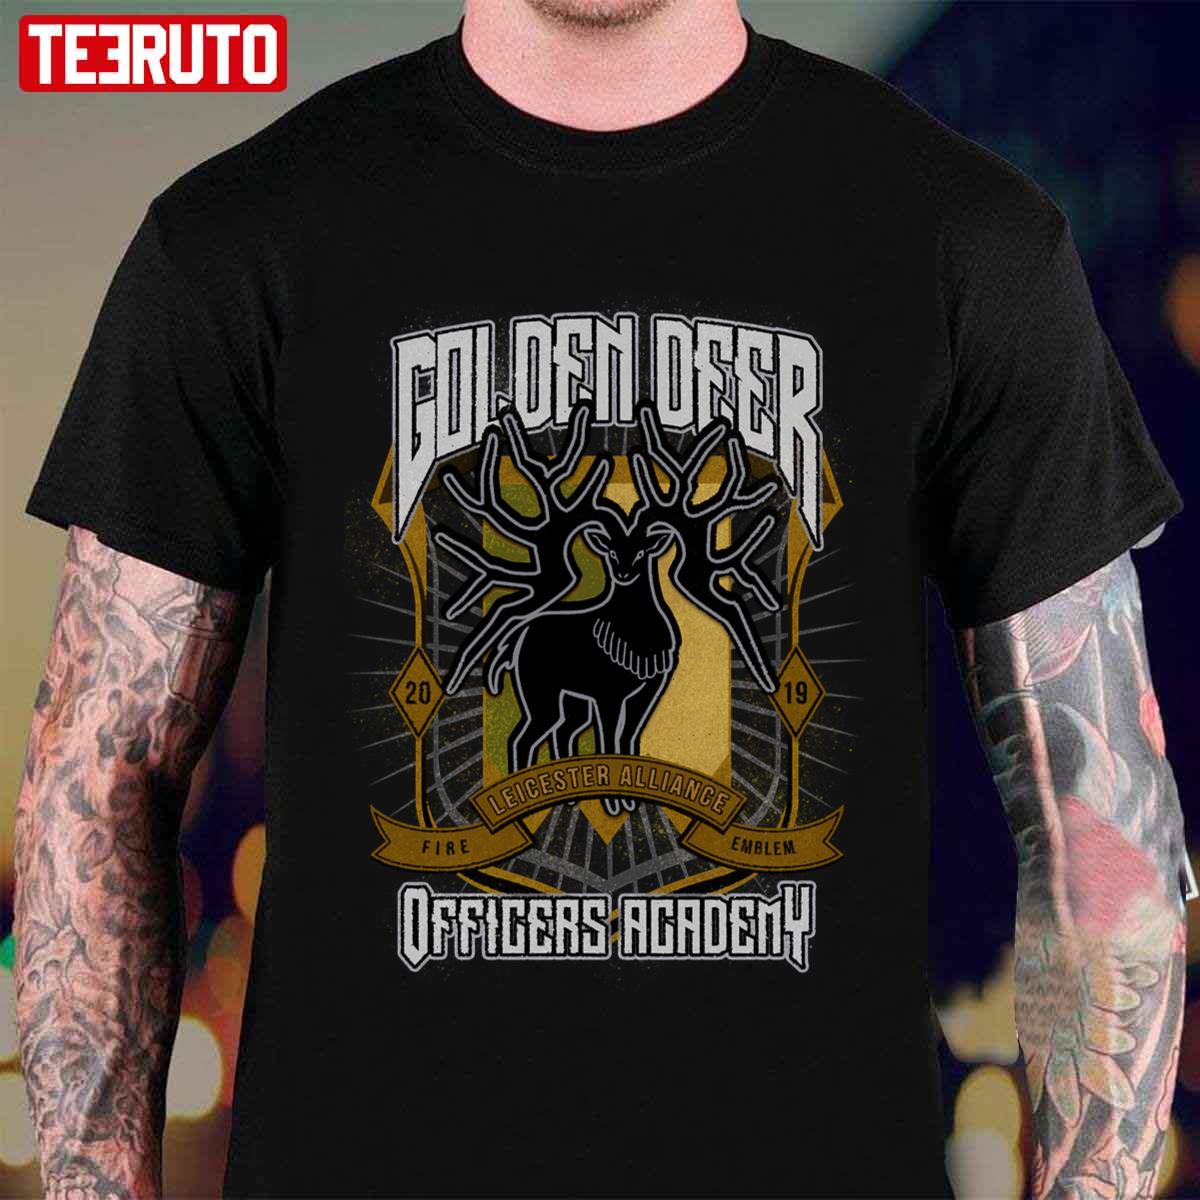 Golden Deer Crest Leicester Alliance Officers Academy Fire Emblem Unisex T-Shirt